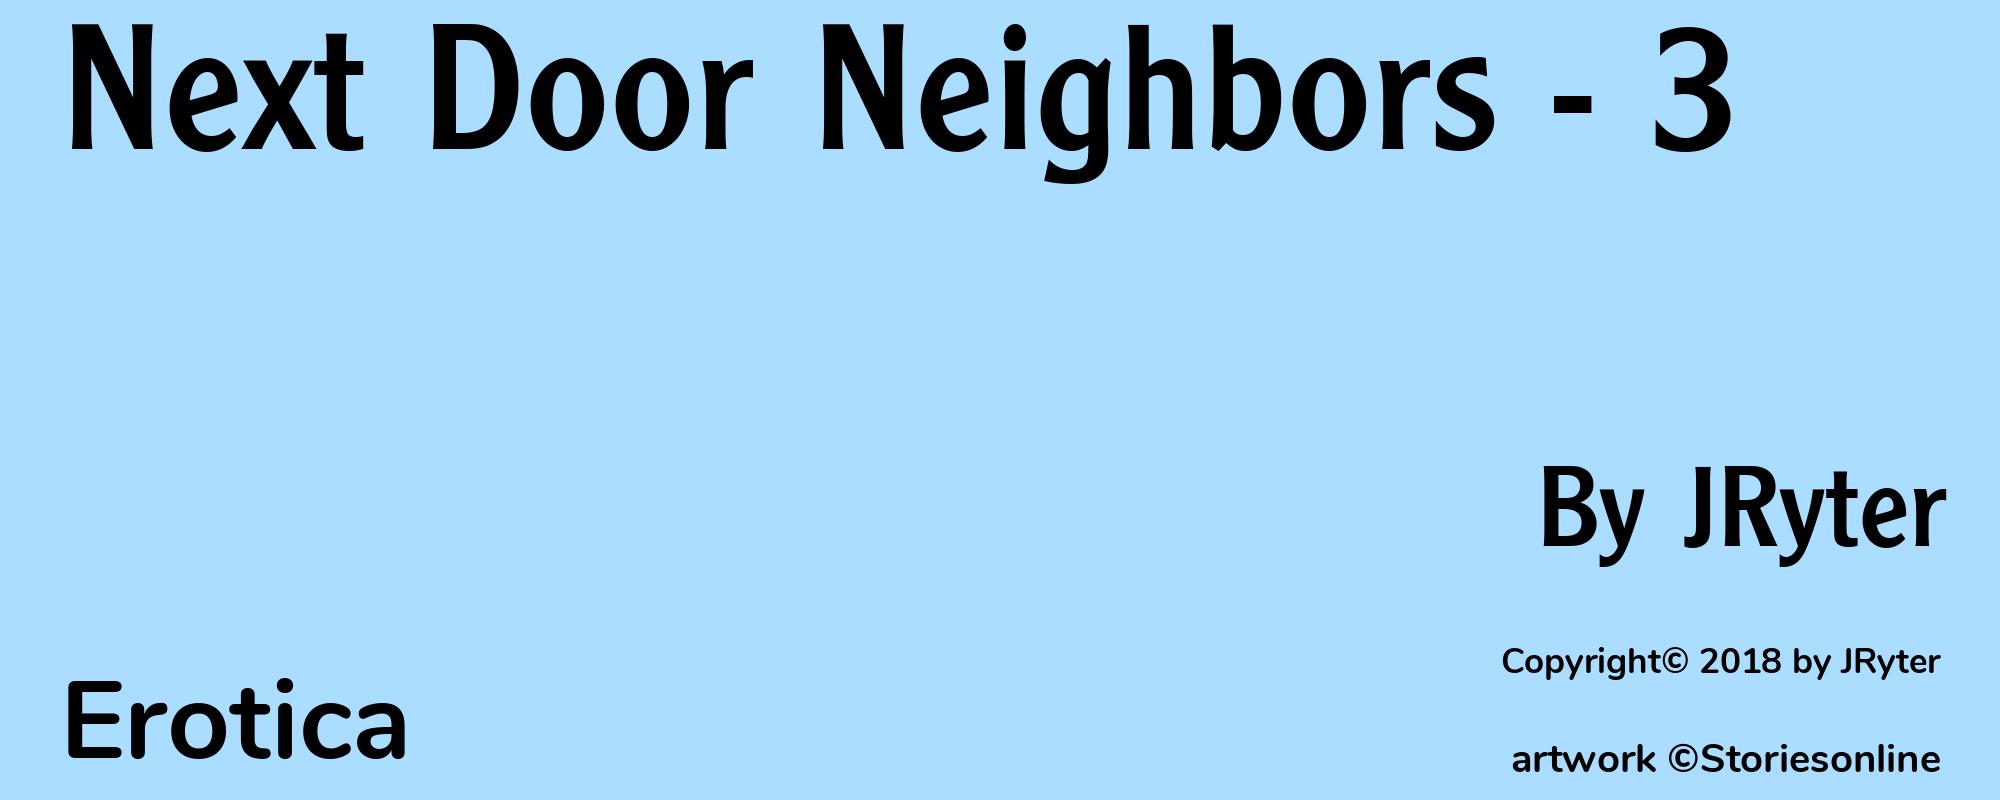 Next Door Neighbors - 3 - Cover